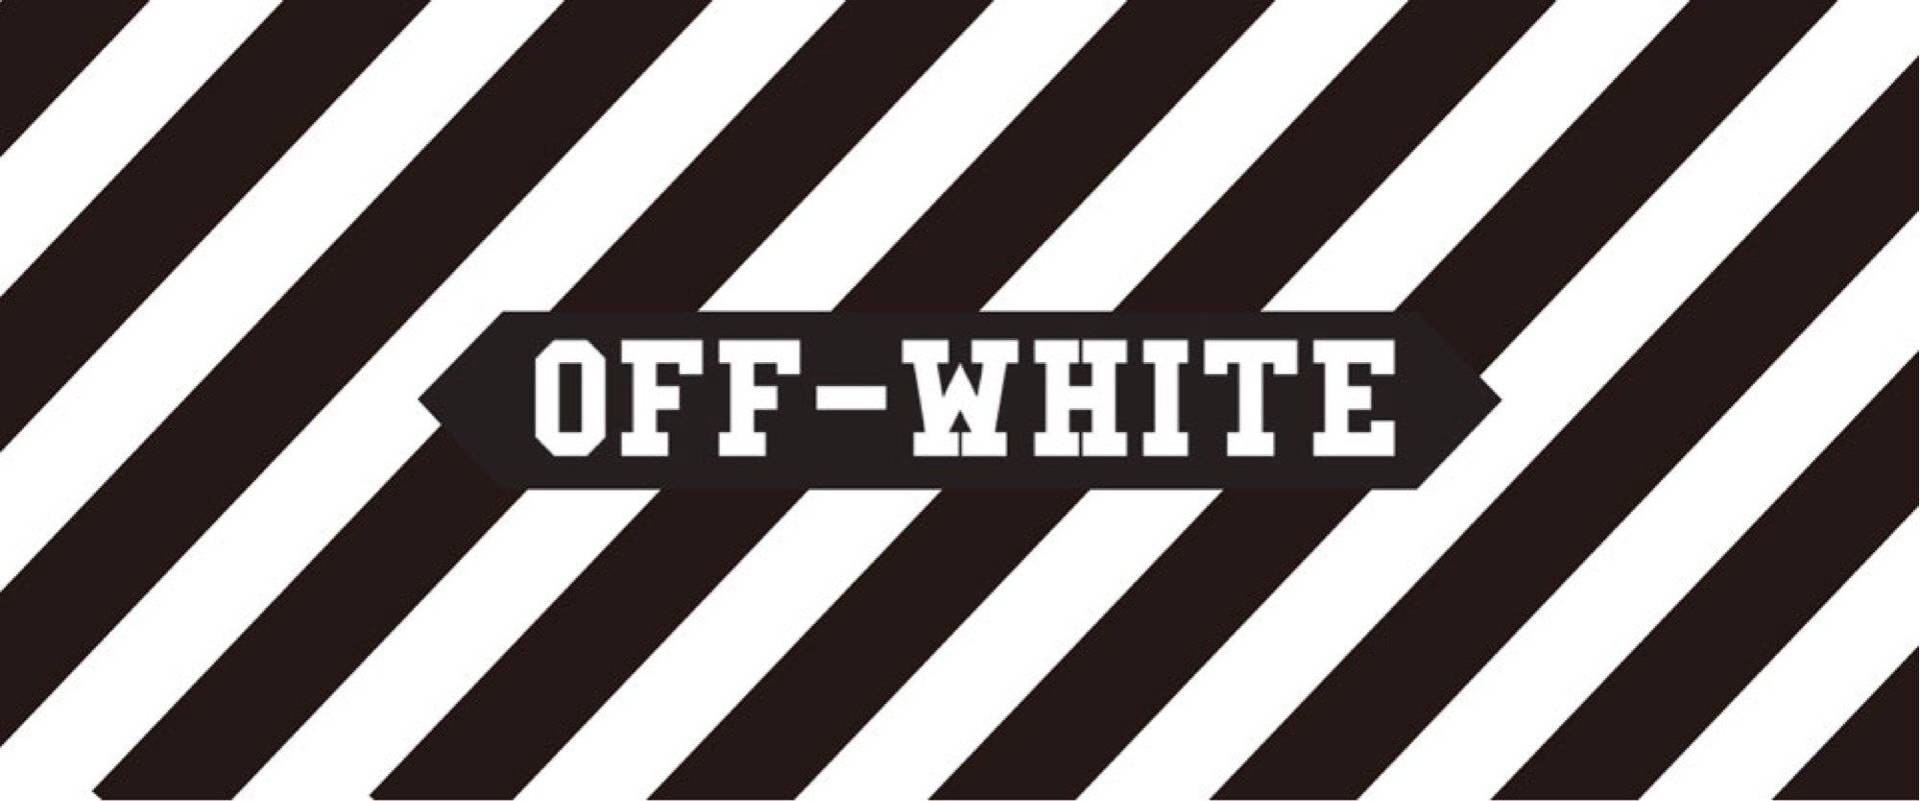 Off White Logo Diagonal Lines